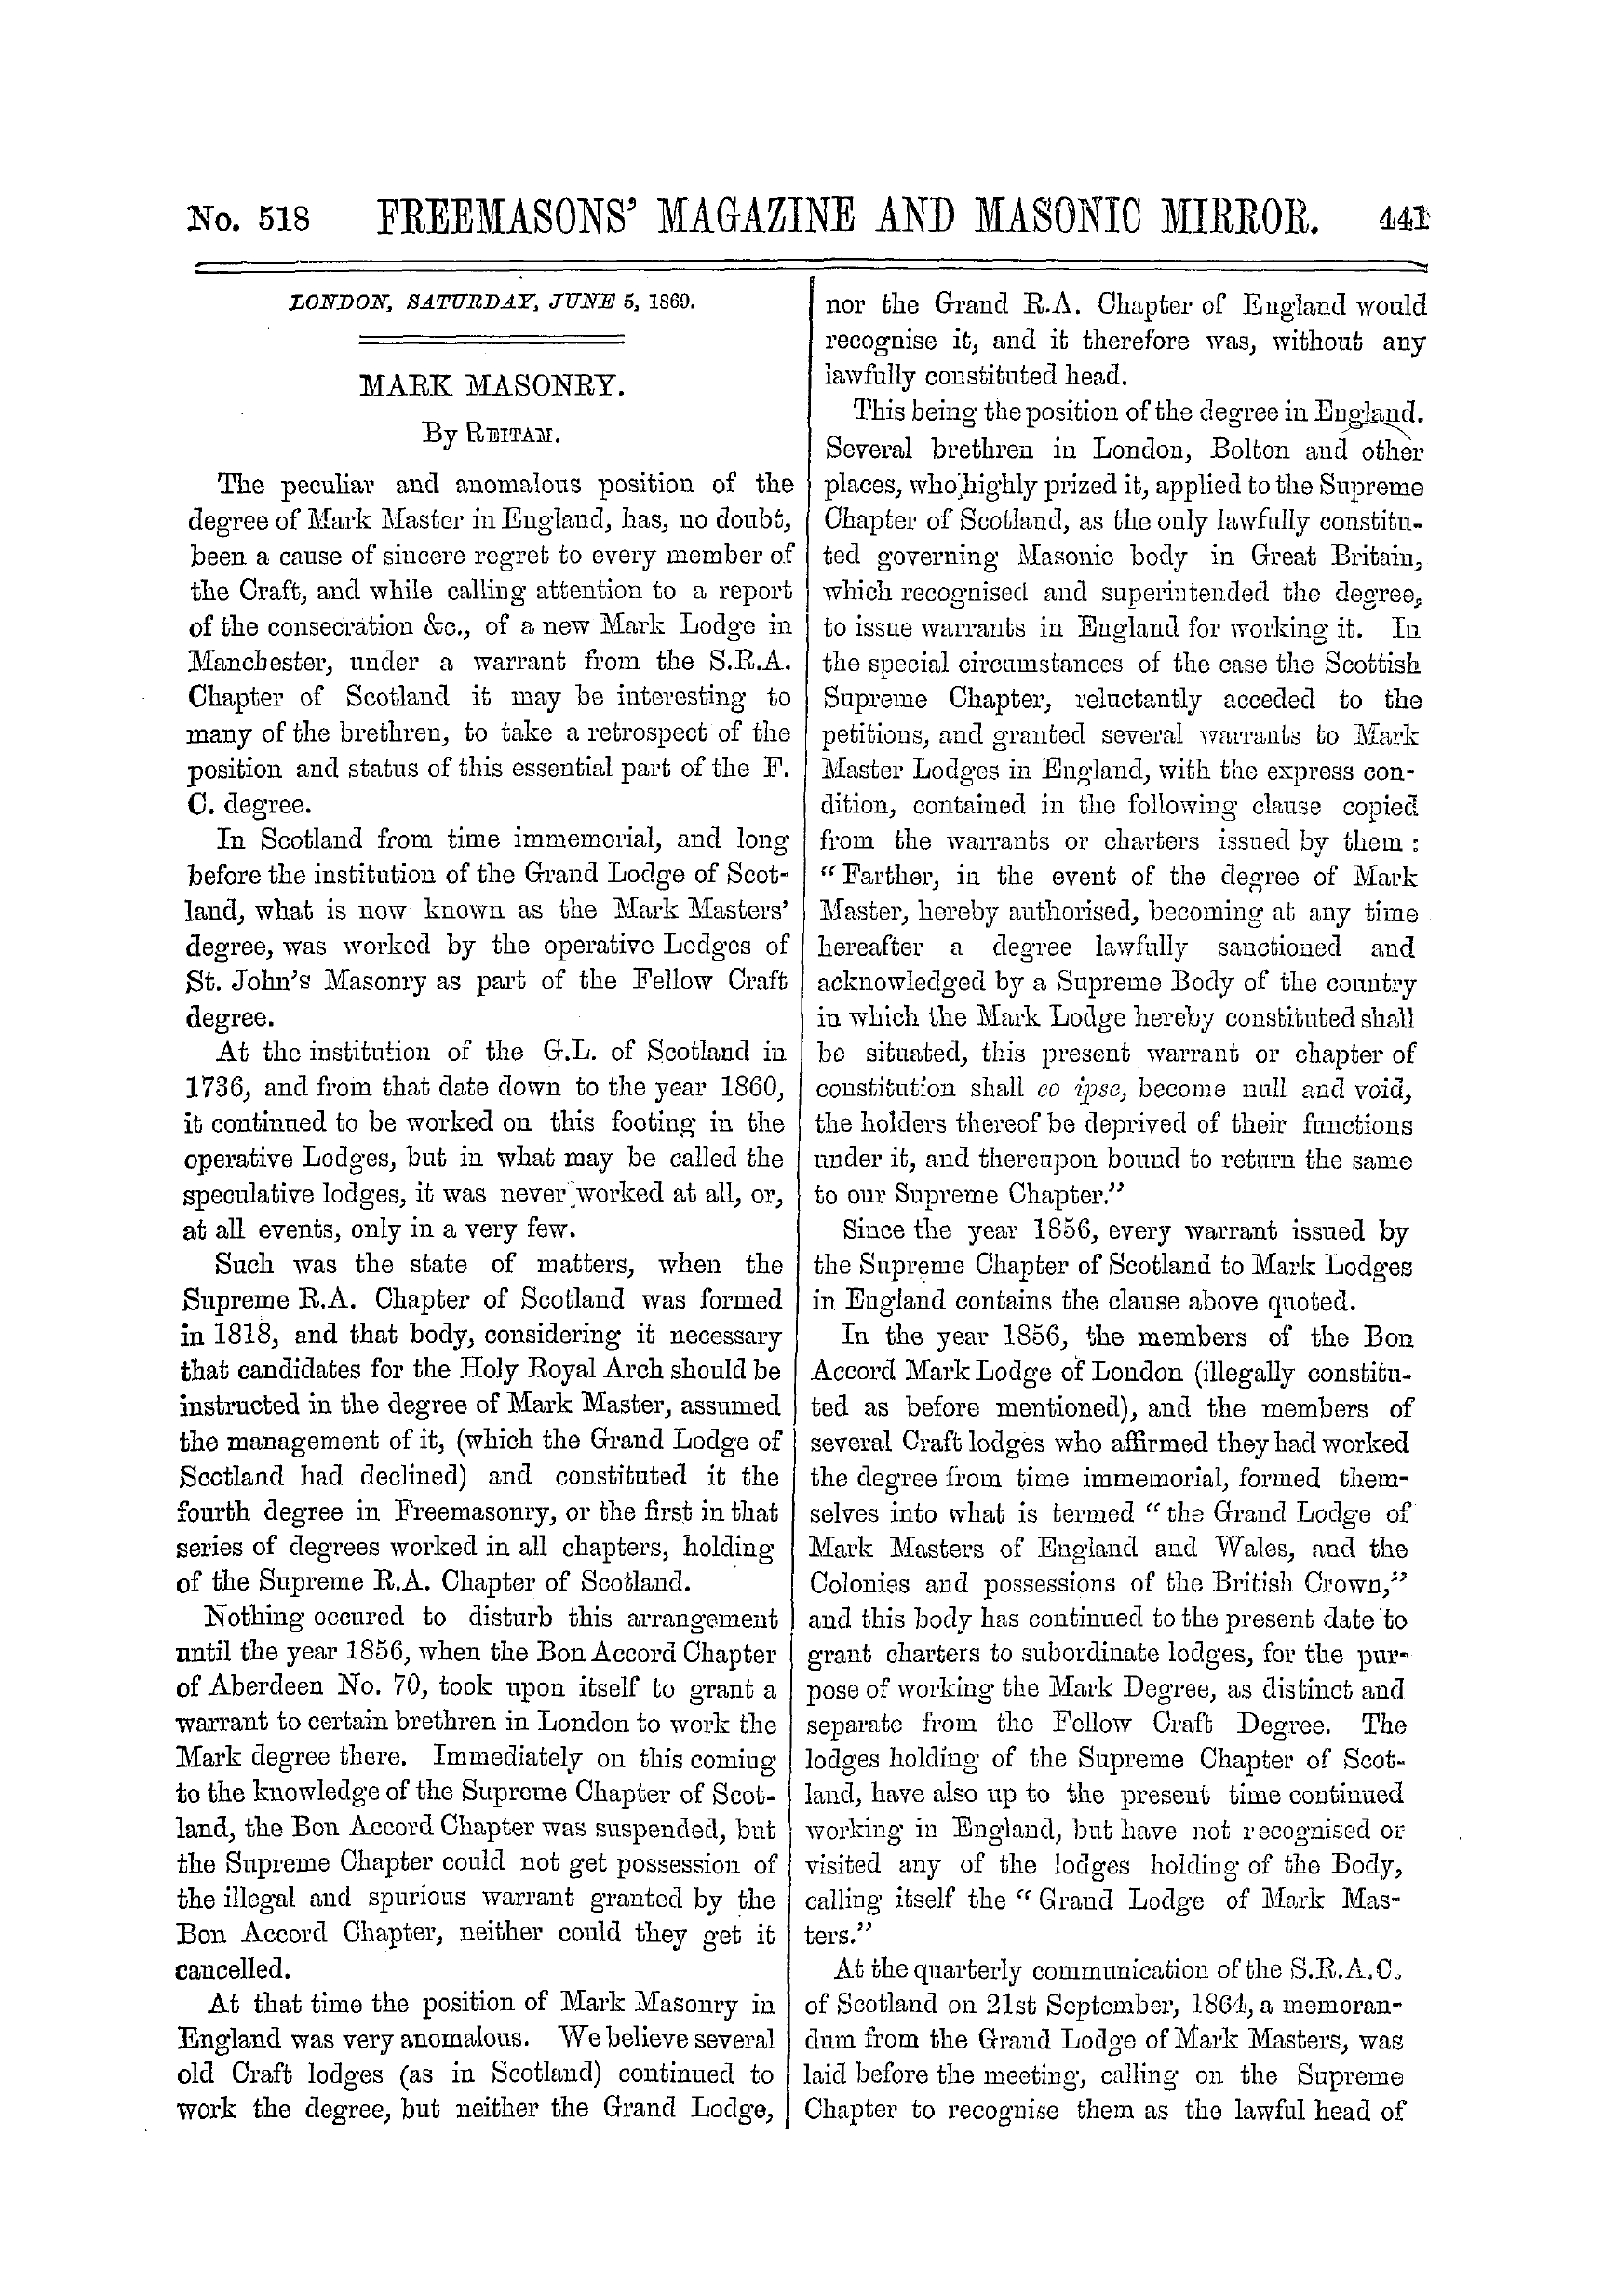 The Freemasons' Monthly Magazine: 1869-06-05 - Mark Masonry.